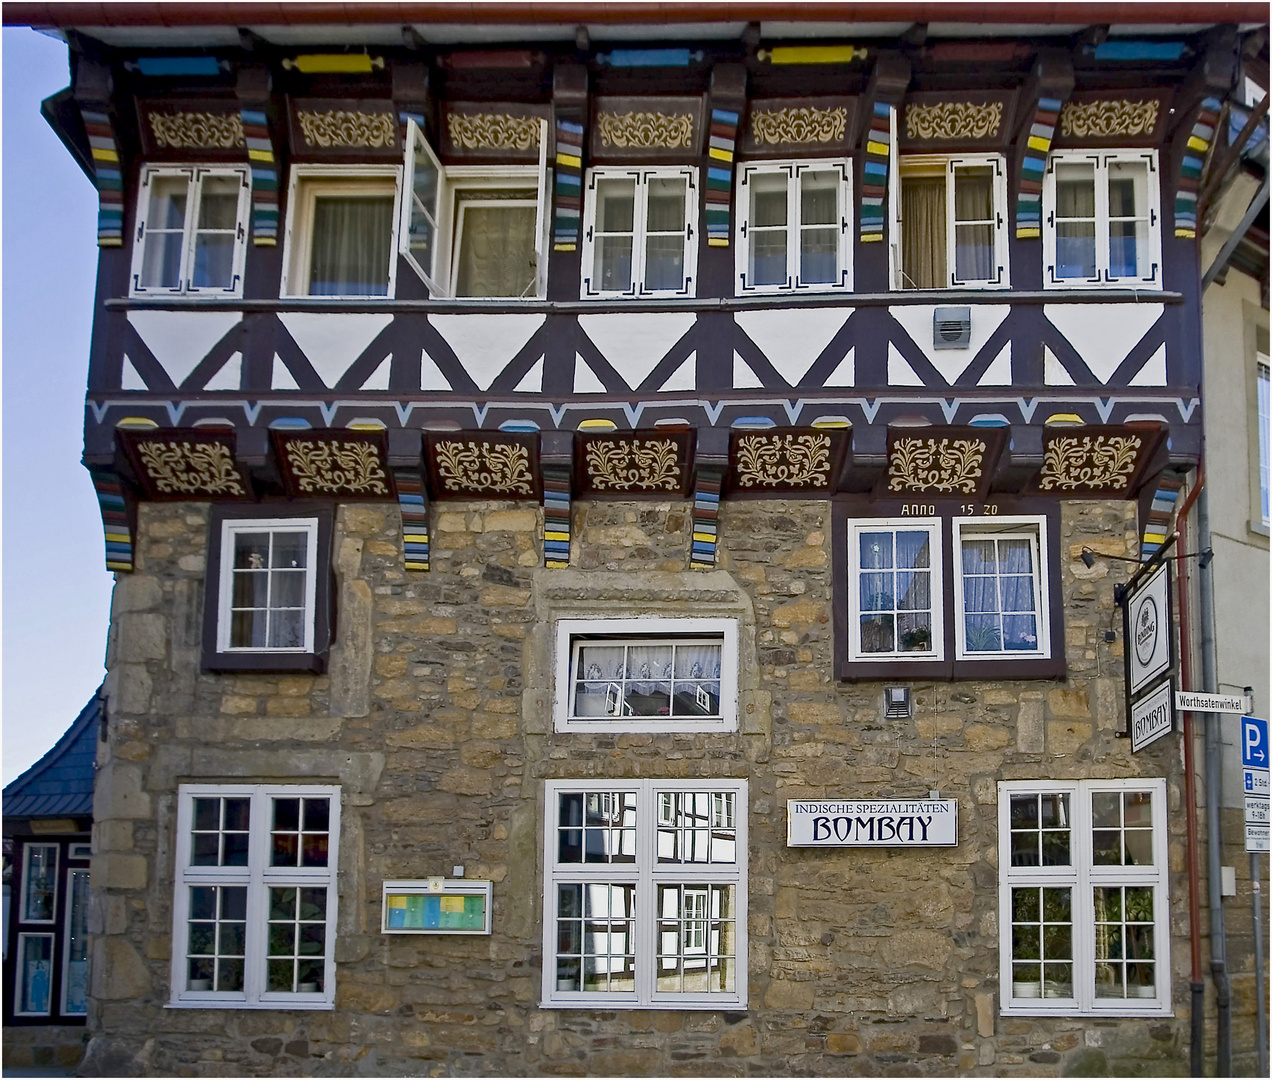 Bombay in Goslar